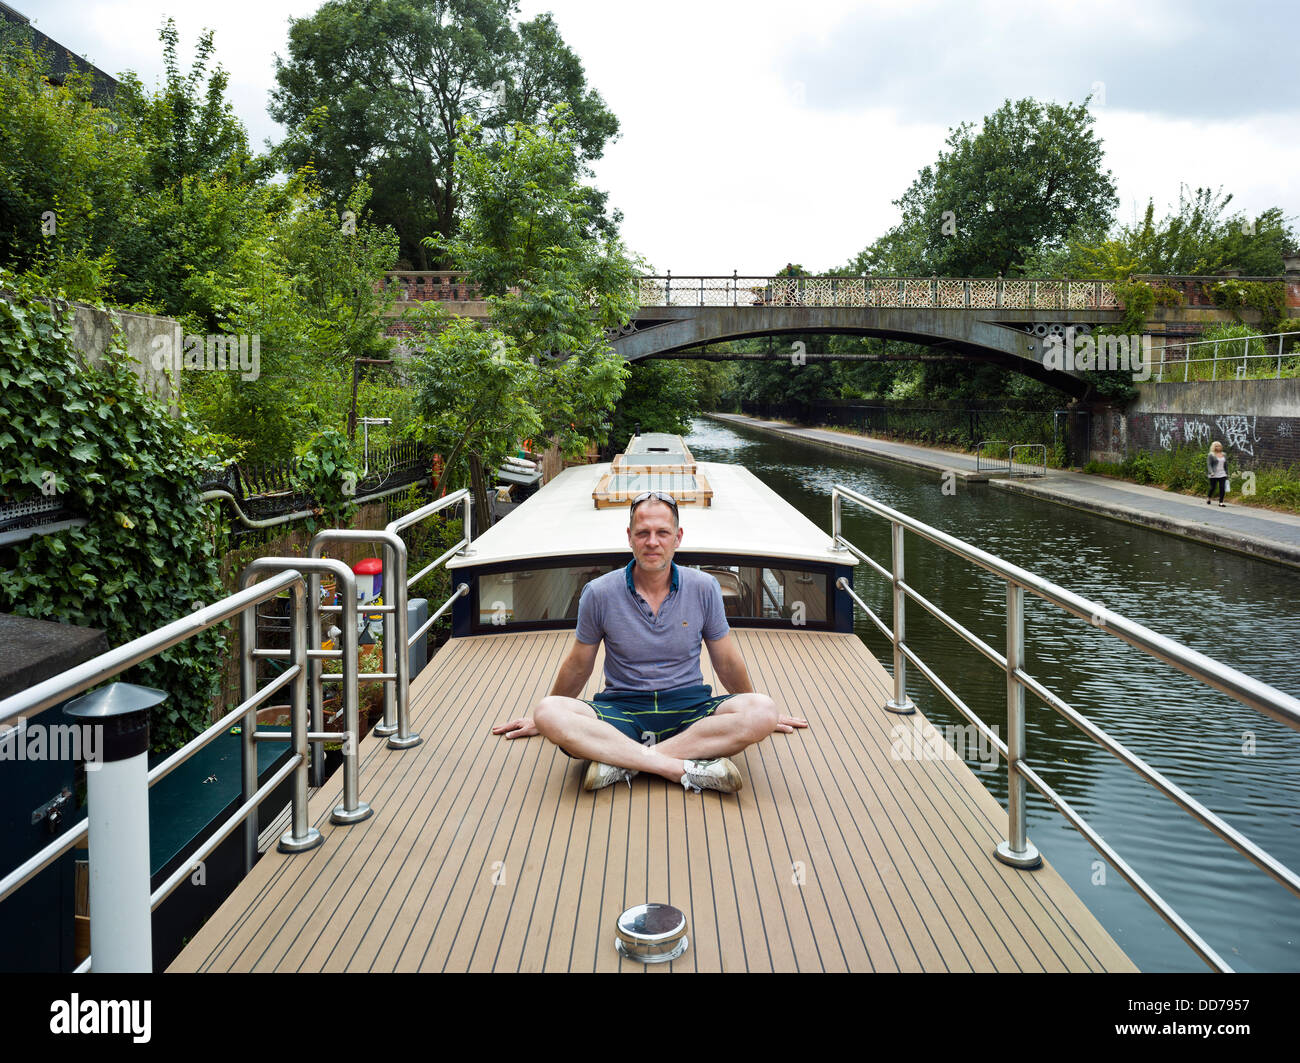 Narrowboat, Londra, Regno Unito. Architetto: Pete giovani, 2013. Pete giovani su sun deck. Foto Stock